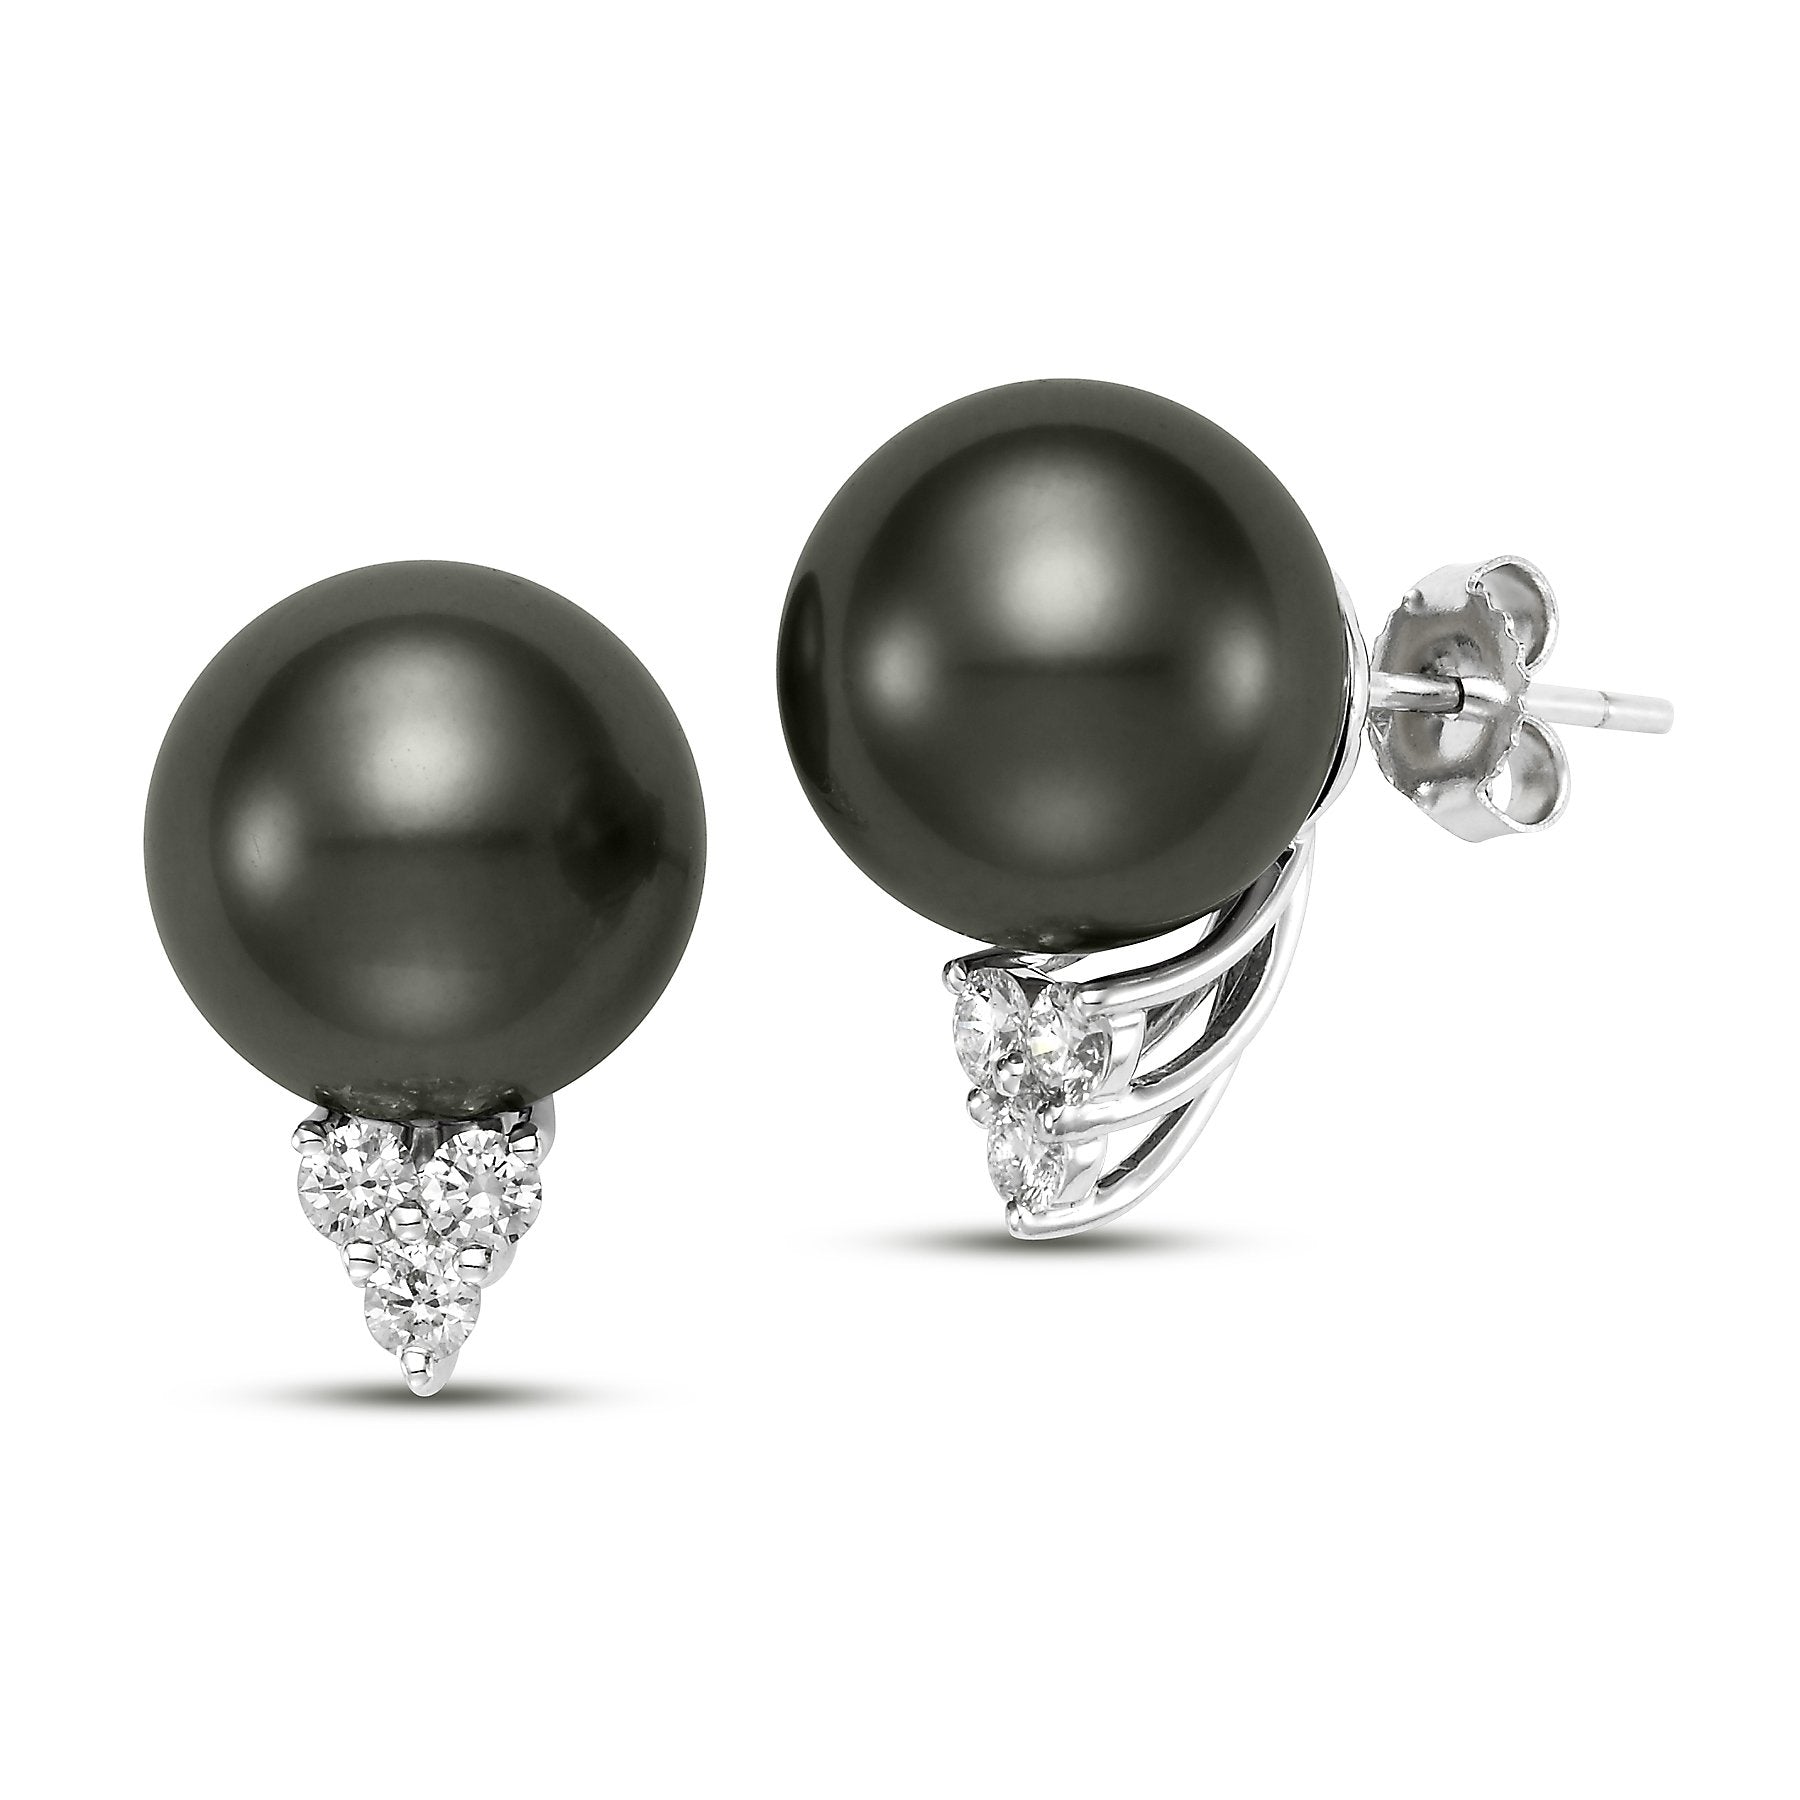 trilogy pearl & diamond earrings